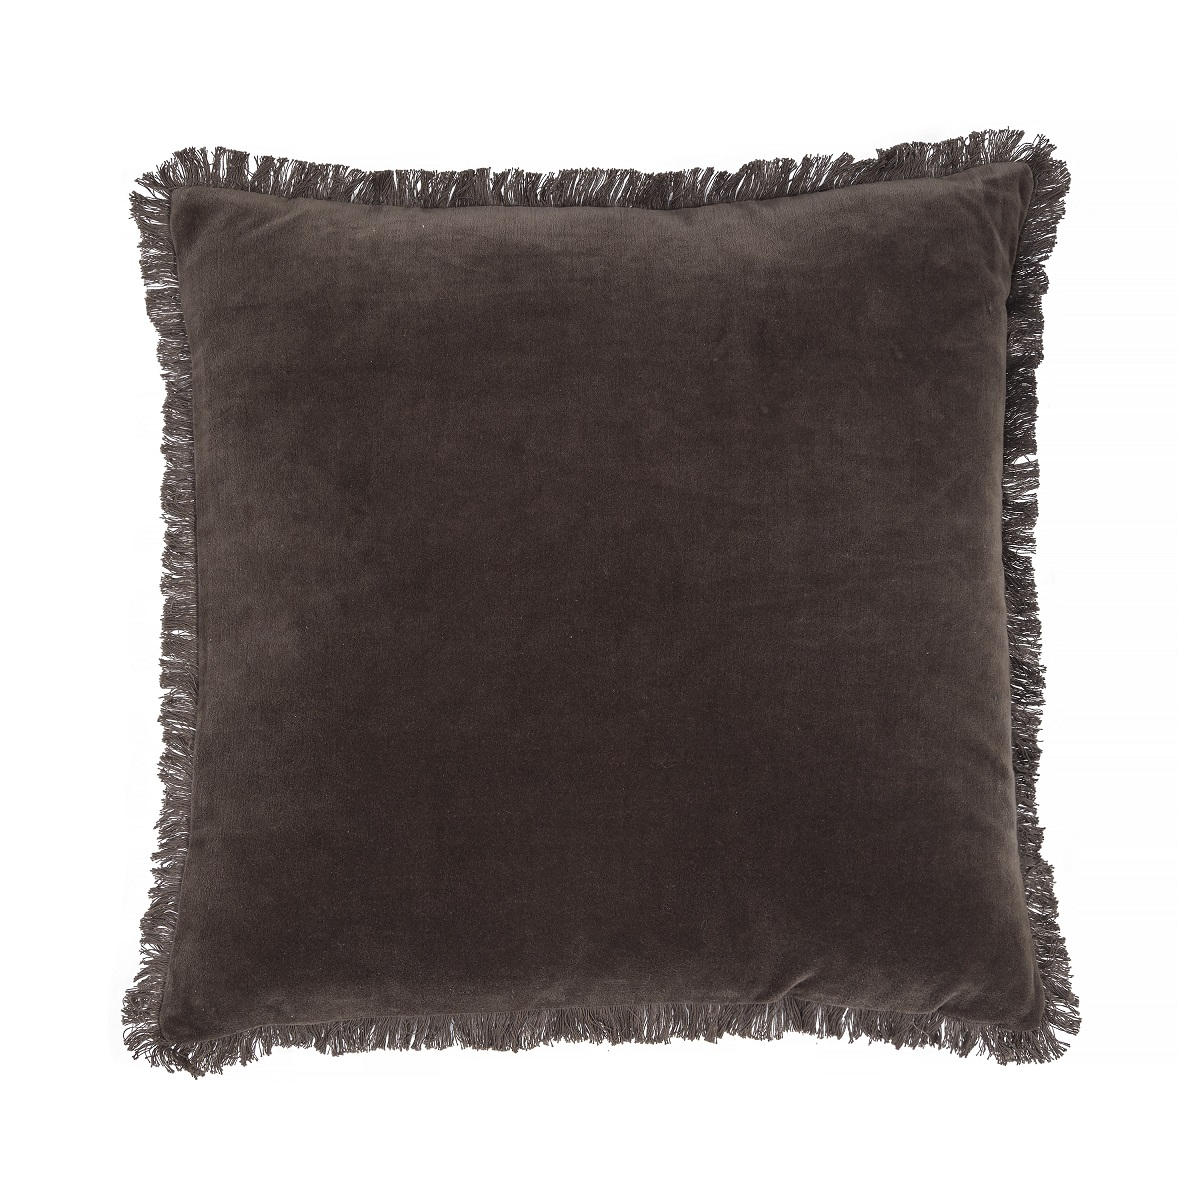 KUDDFODRAL 50/50 cm  - mörkbrun, Design, textil (50/50cm)